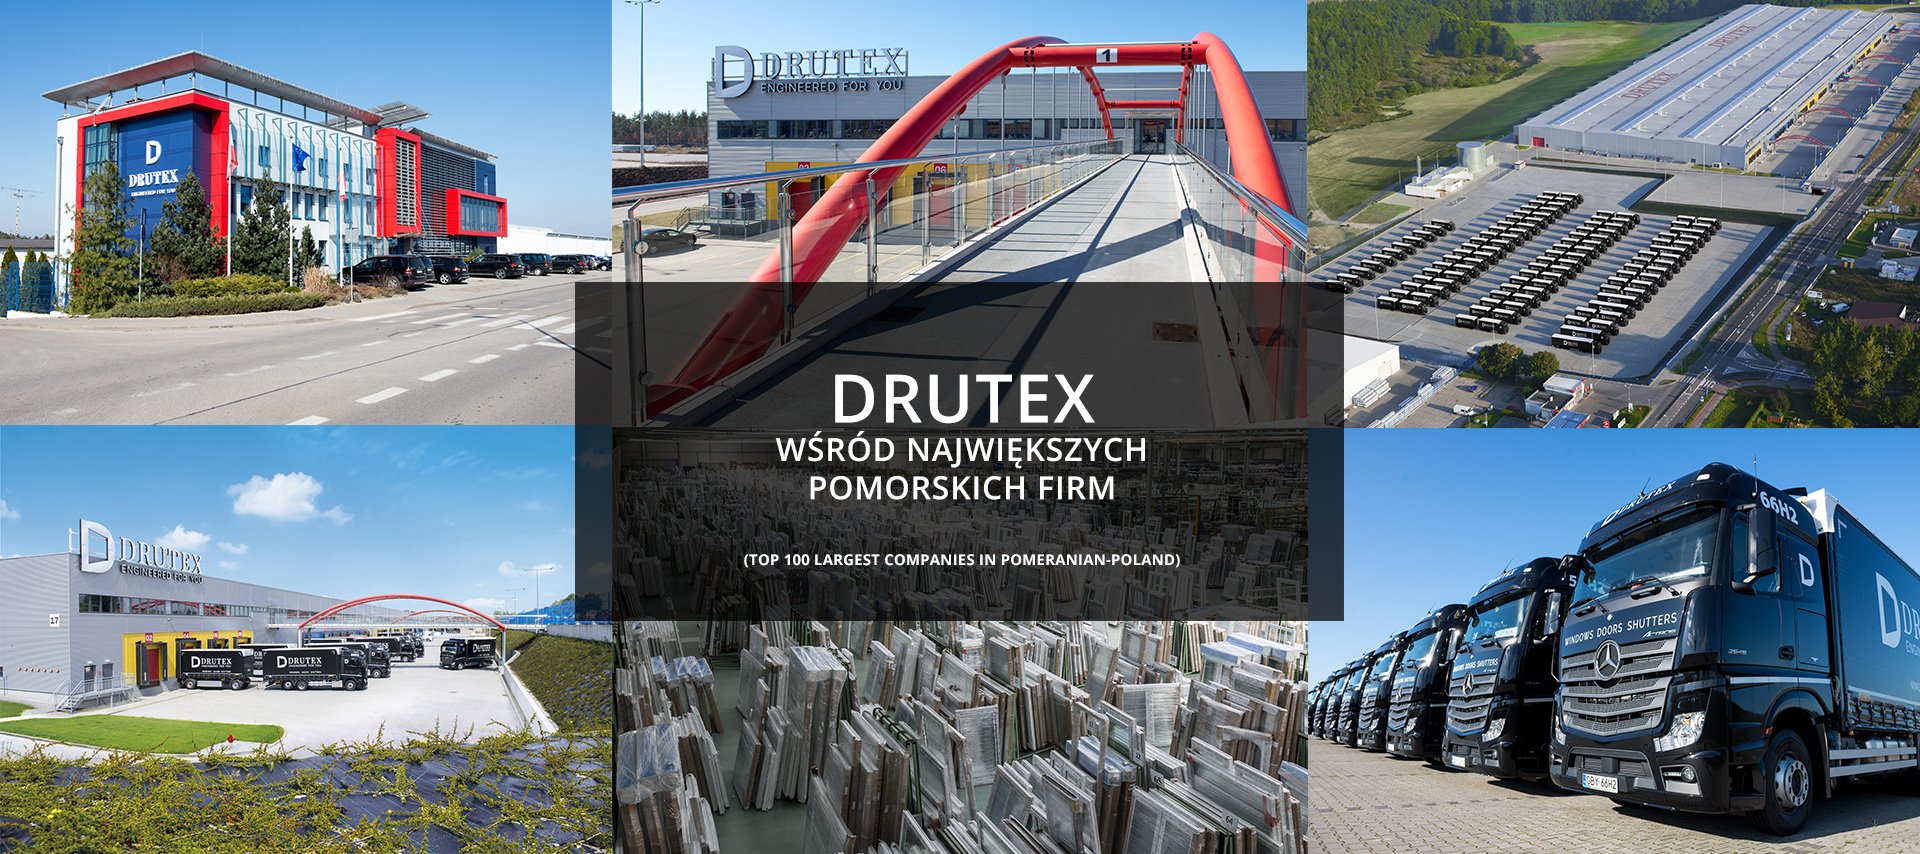 Drutex tra le maggiori aziende del voivodato della Pomerania